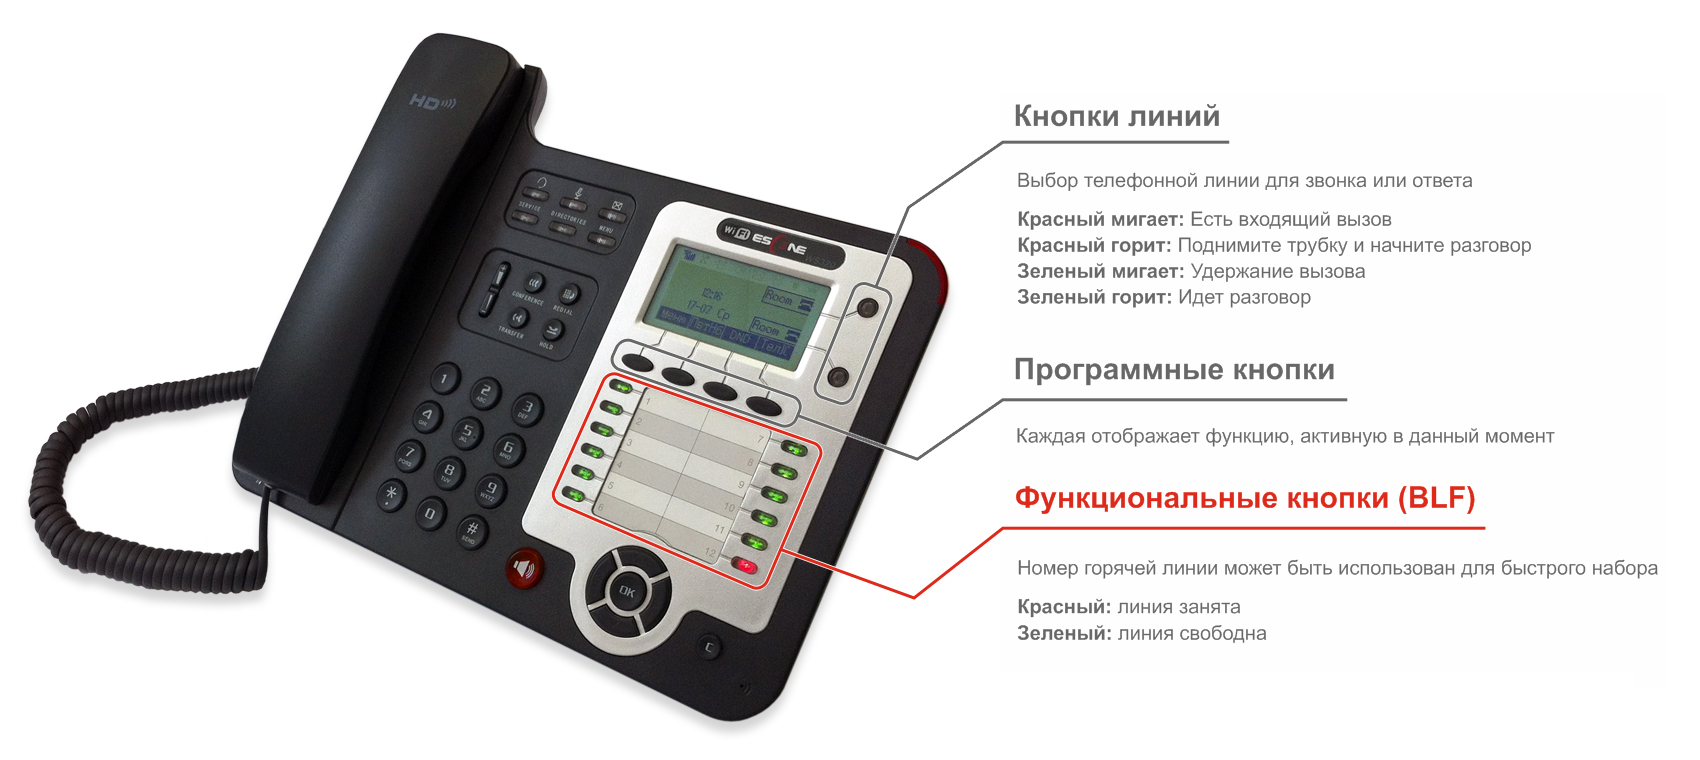 Что значит стационарный телефон. Телефонный аппарат Eltex VP-12. Телефонный аппарат для проводных сетей связи esctne es-206-n. Escene ws290-PN. IP-телефон QVP-100p.